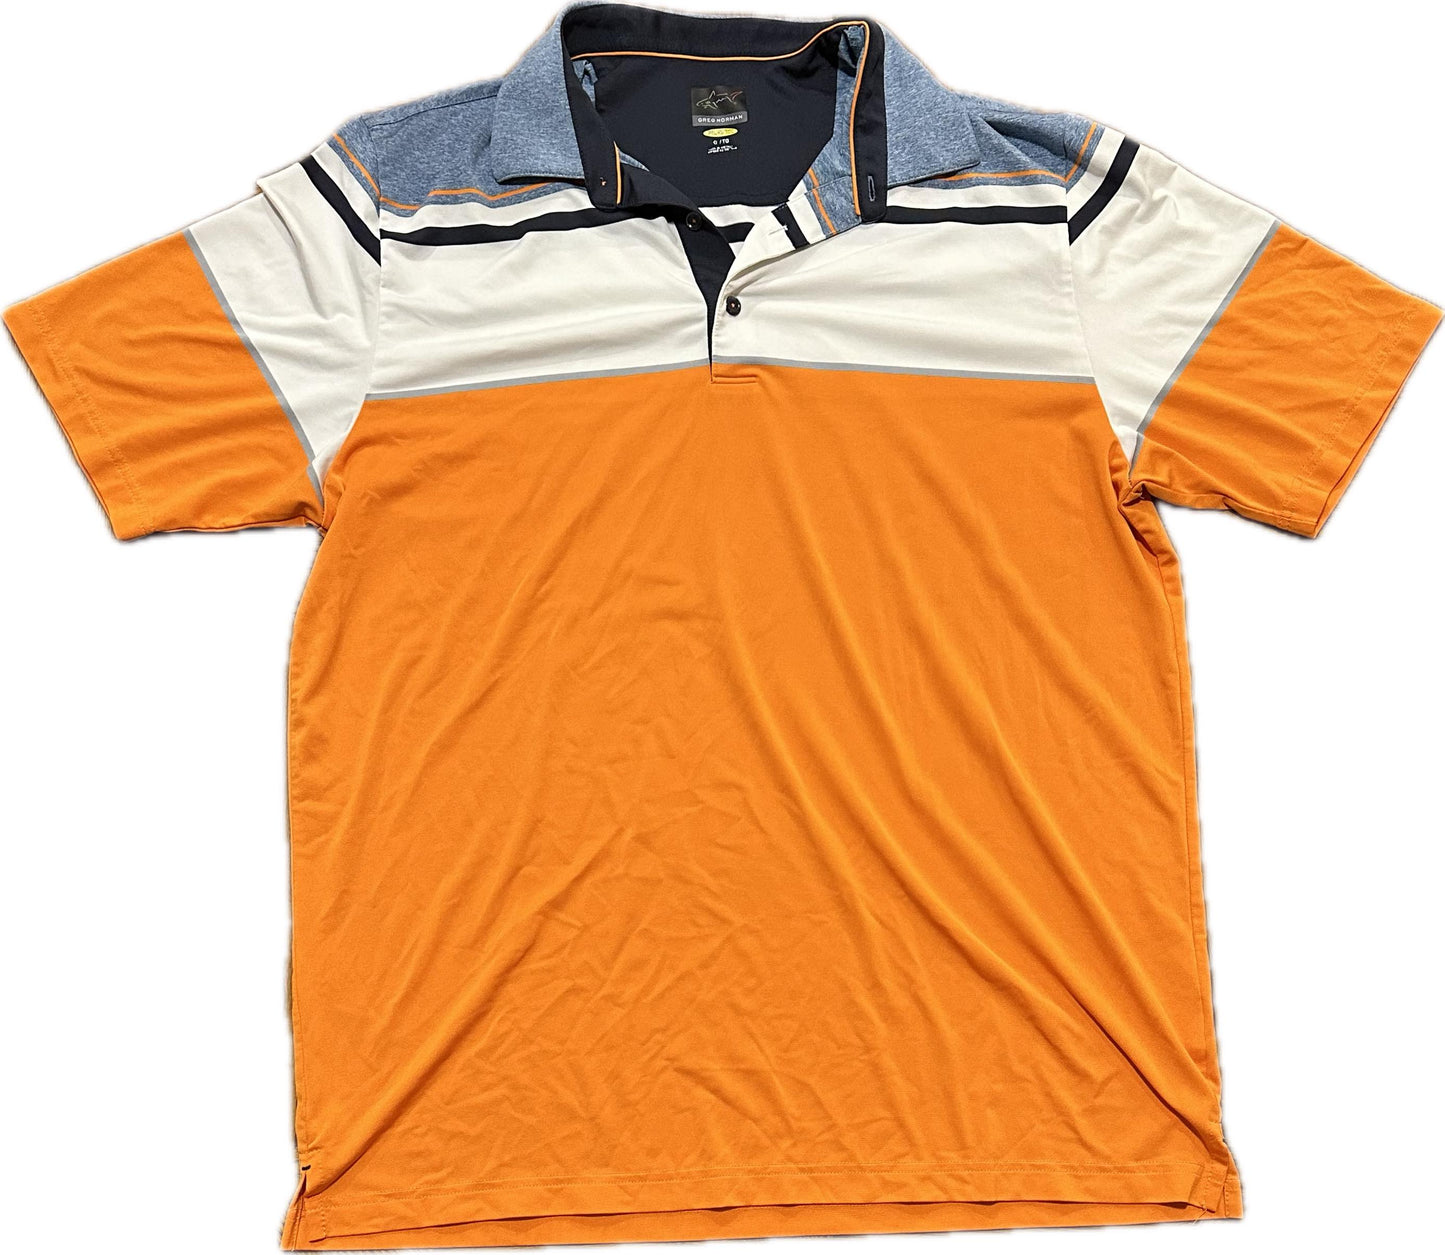 Greg Norman Golf Shirt